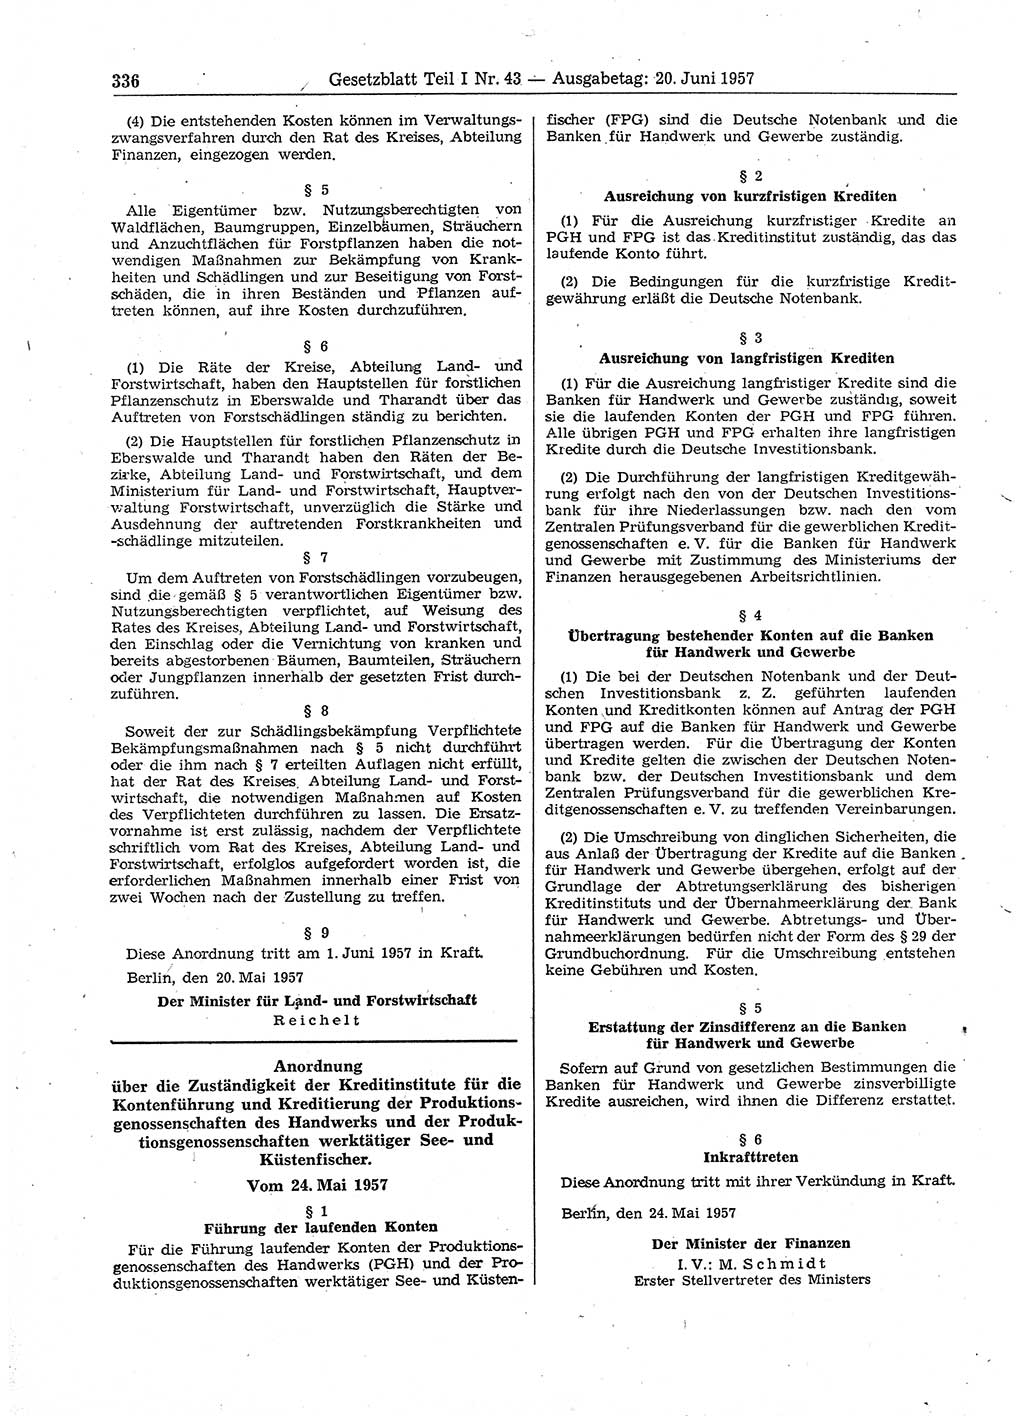 Gesetzblatt (GBl.) der Deutschen Demokratischen Republik (DDR) Teil Ⅰ 1957, Seite 336 (GBl. DDR Ⅰ 1957, S. 336)